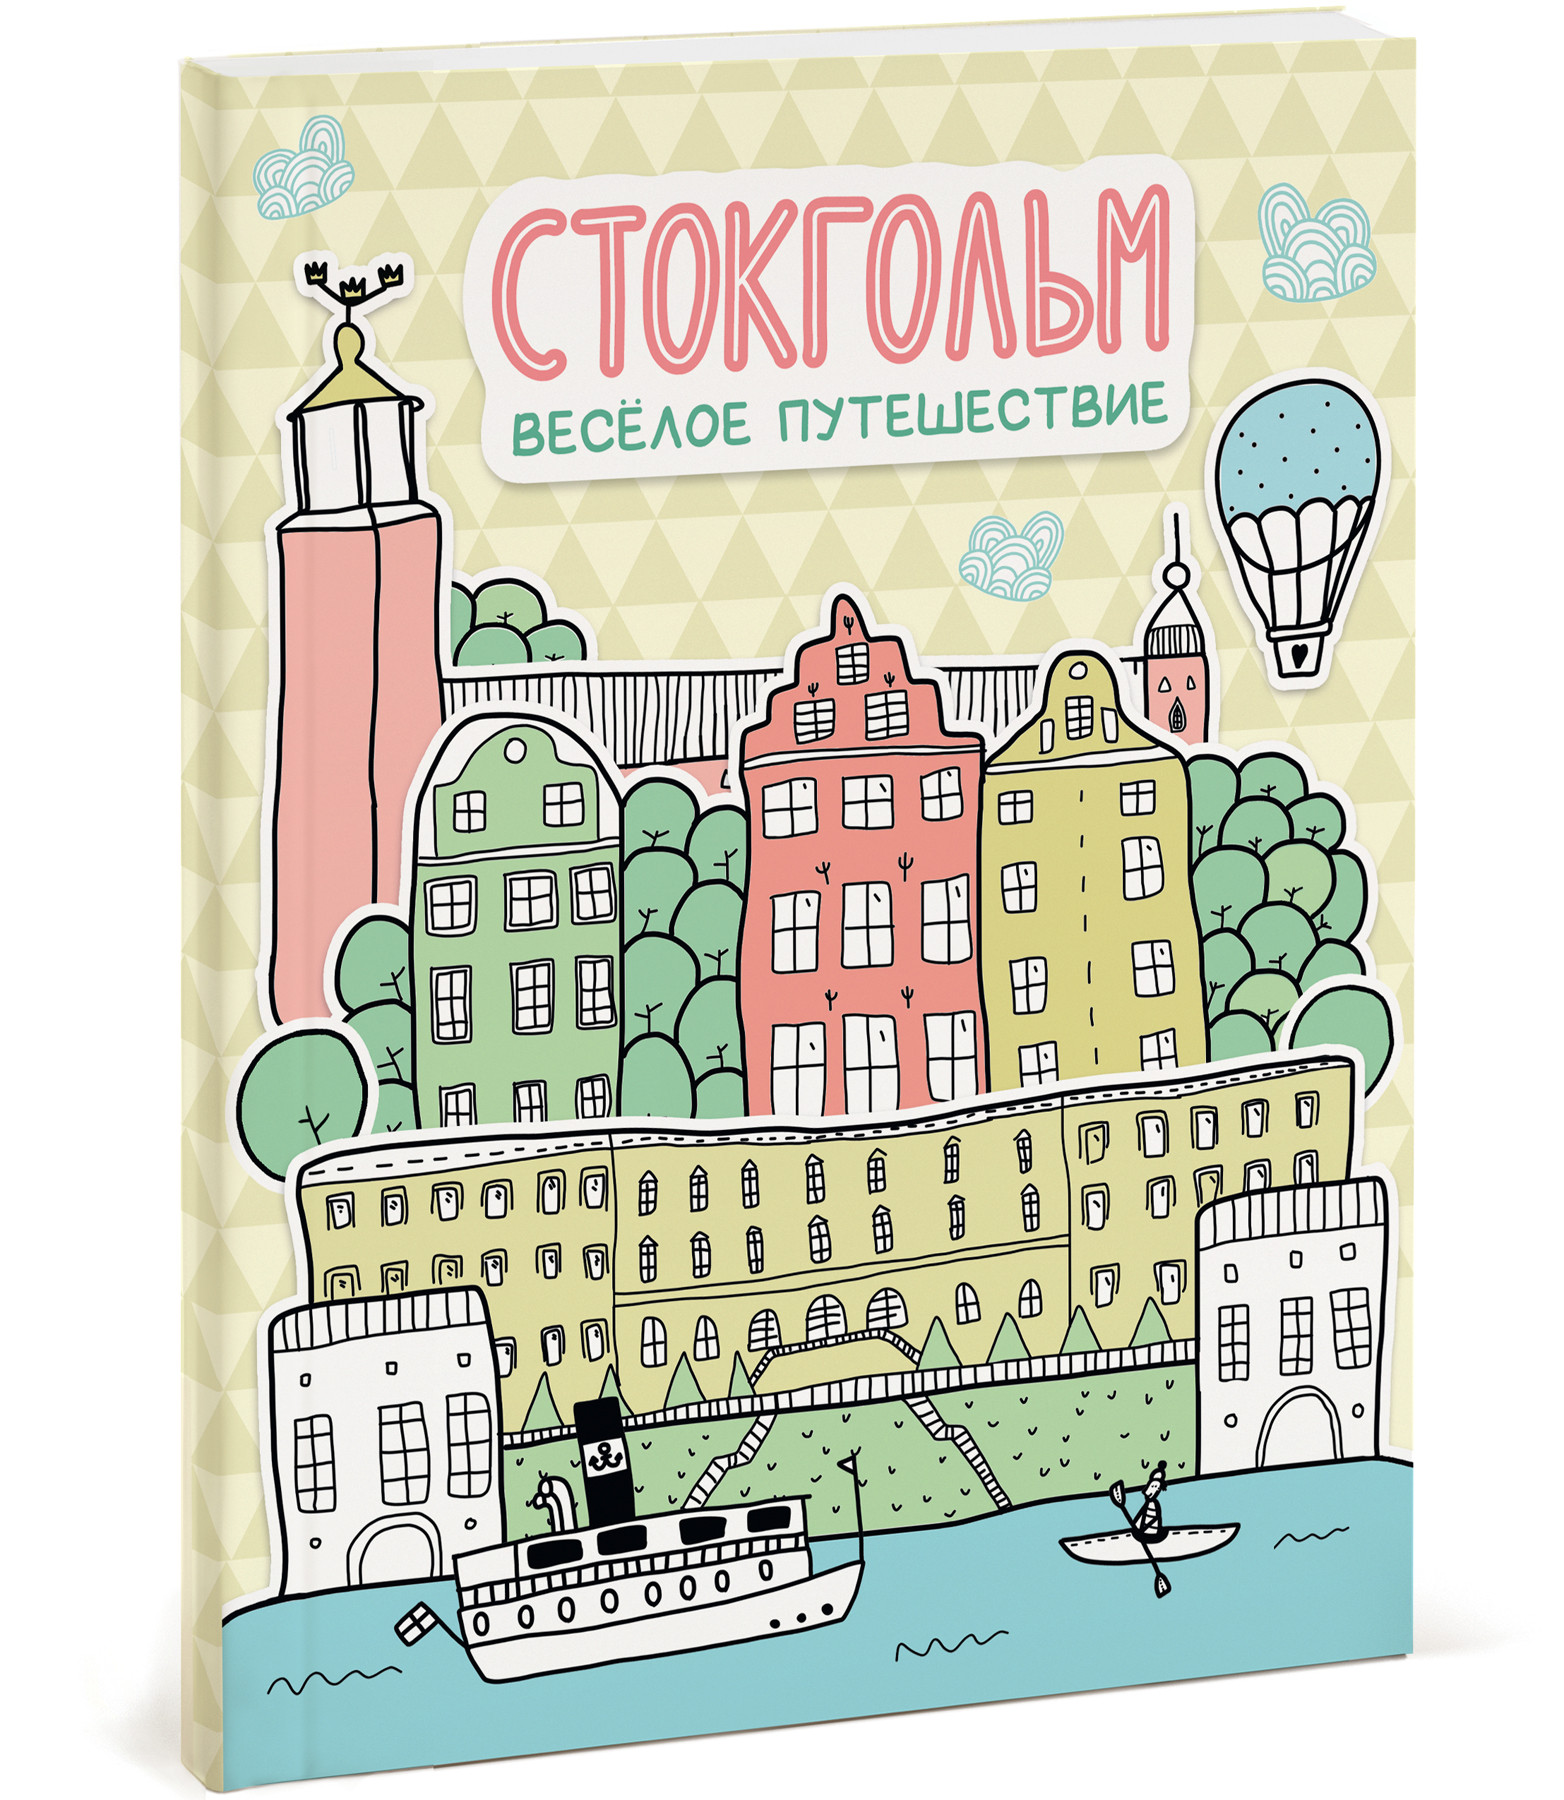 Вышел первый в России путеводитель для детей по Стокгольму.